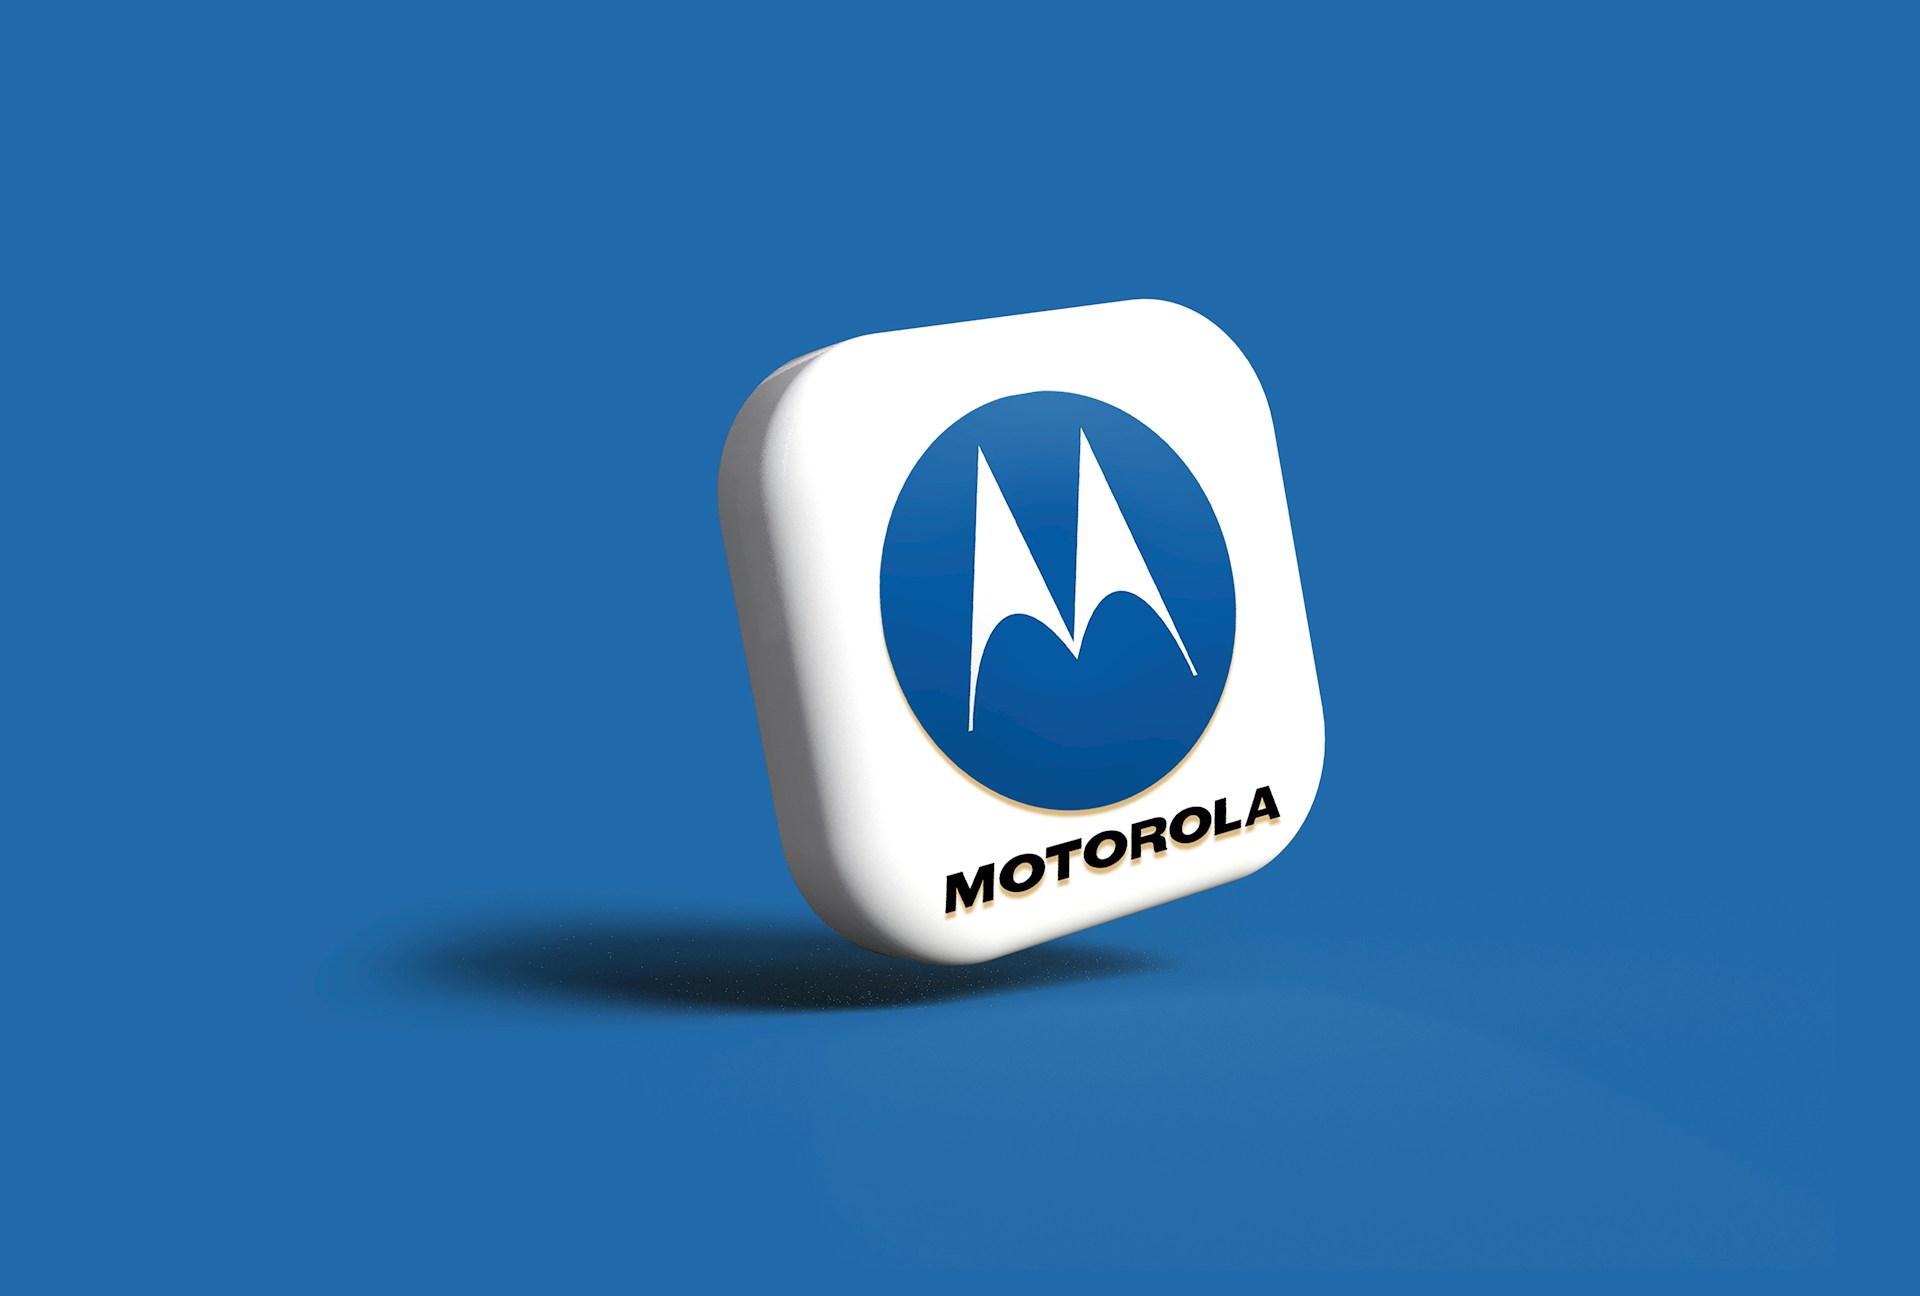 Motorola Edge 50 Ultra ভারতের বাজারে লঞ্চ: শীর্ষ বৈশিষ্ট্য, বৈশিষ্ট্য এবং আপনার জানা দরকার সবকিছু